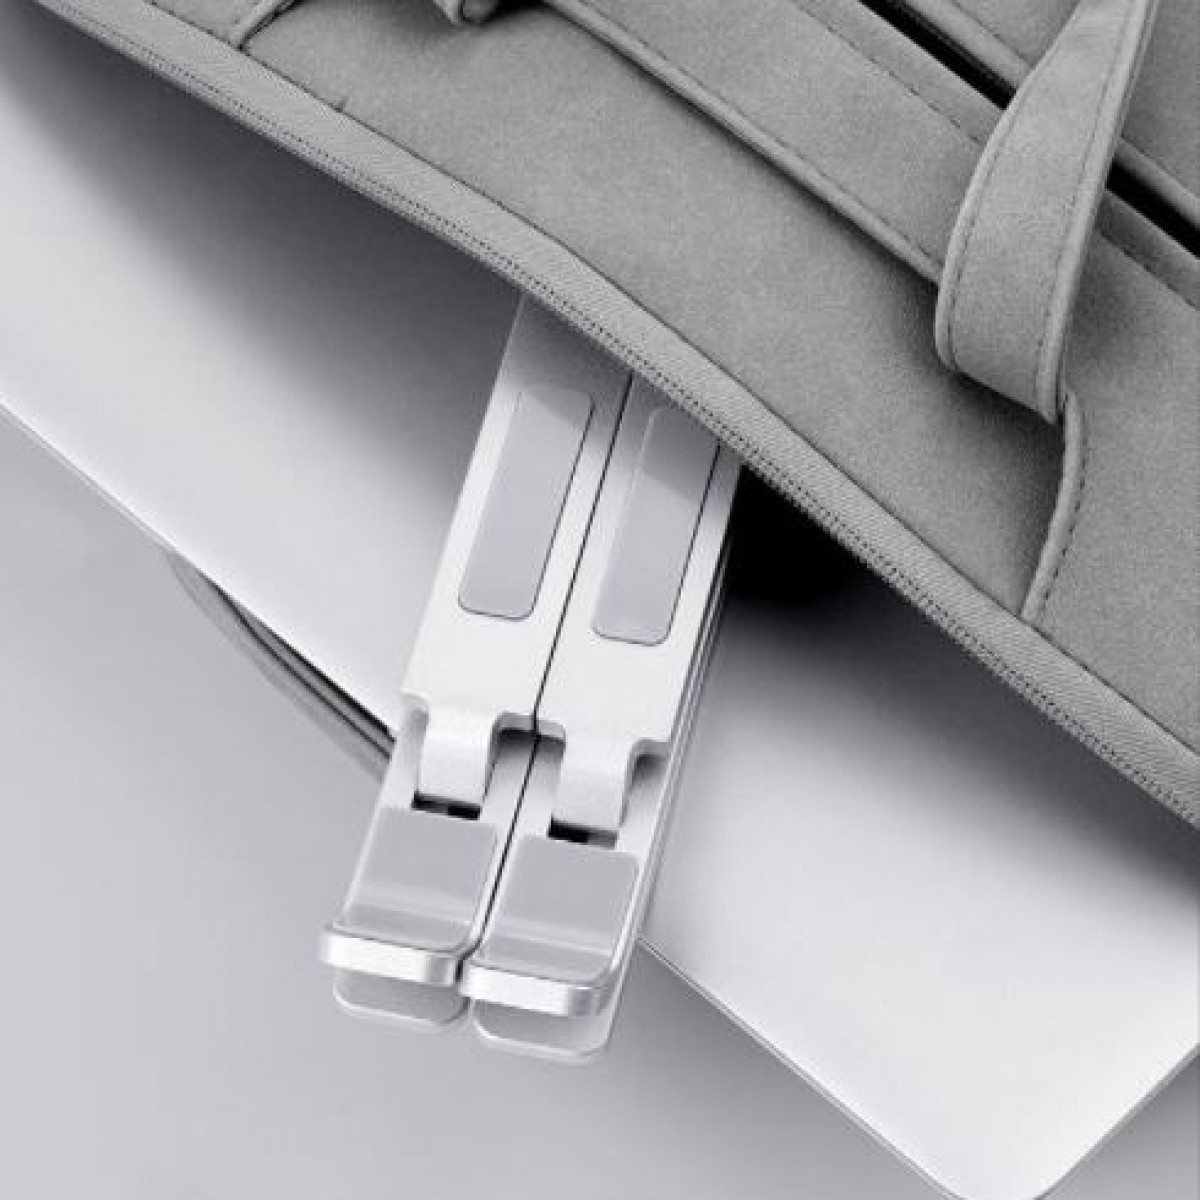 Aluminiumlegierung Laptopständer Notebook-Stand INF zusammenklappbar